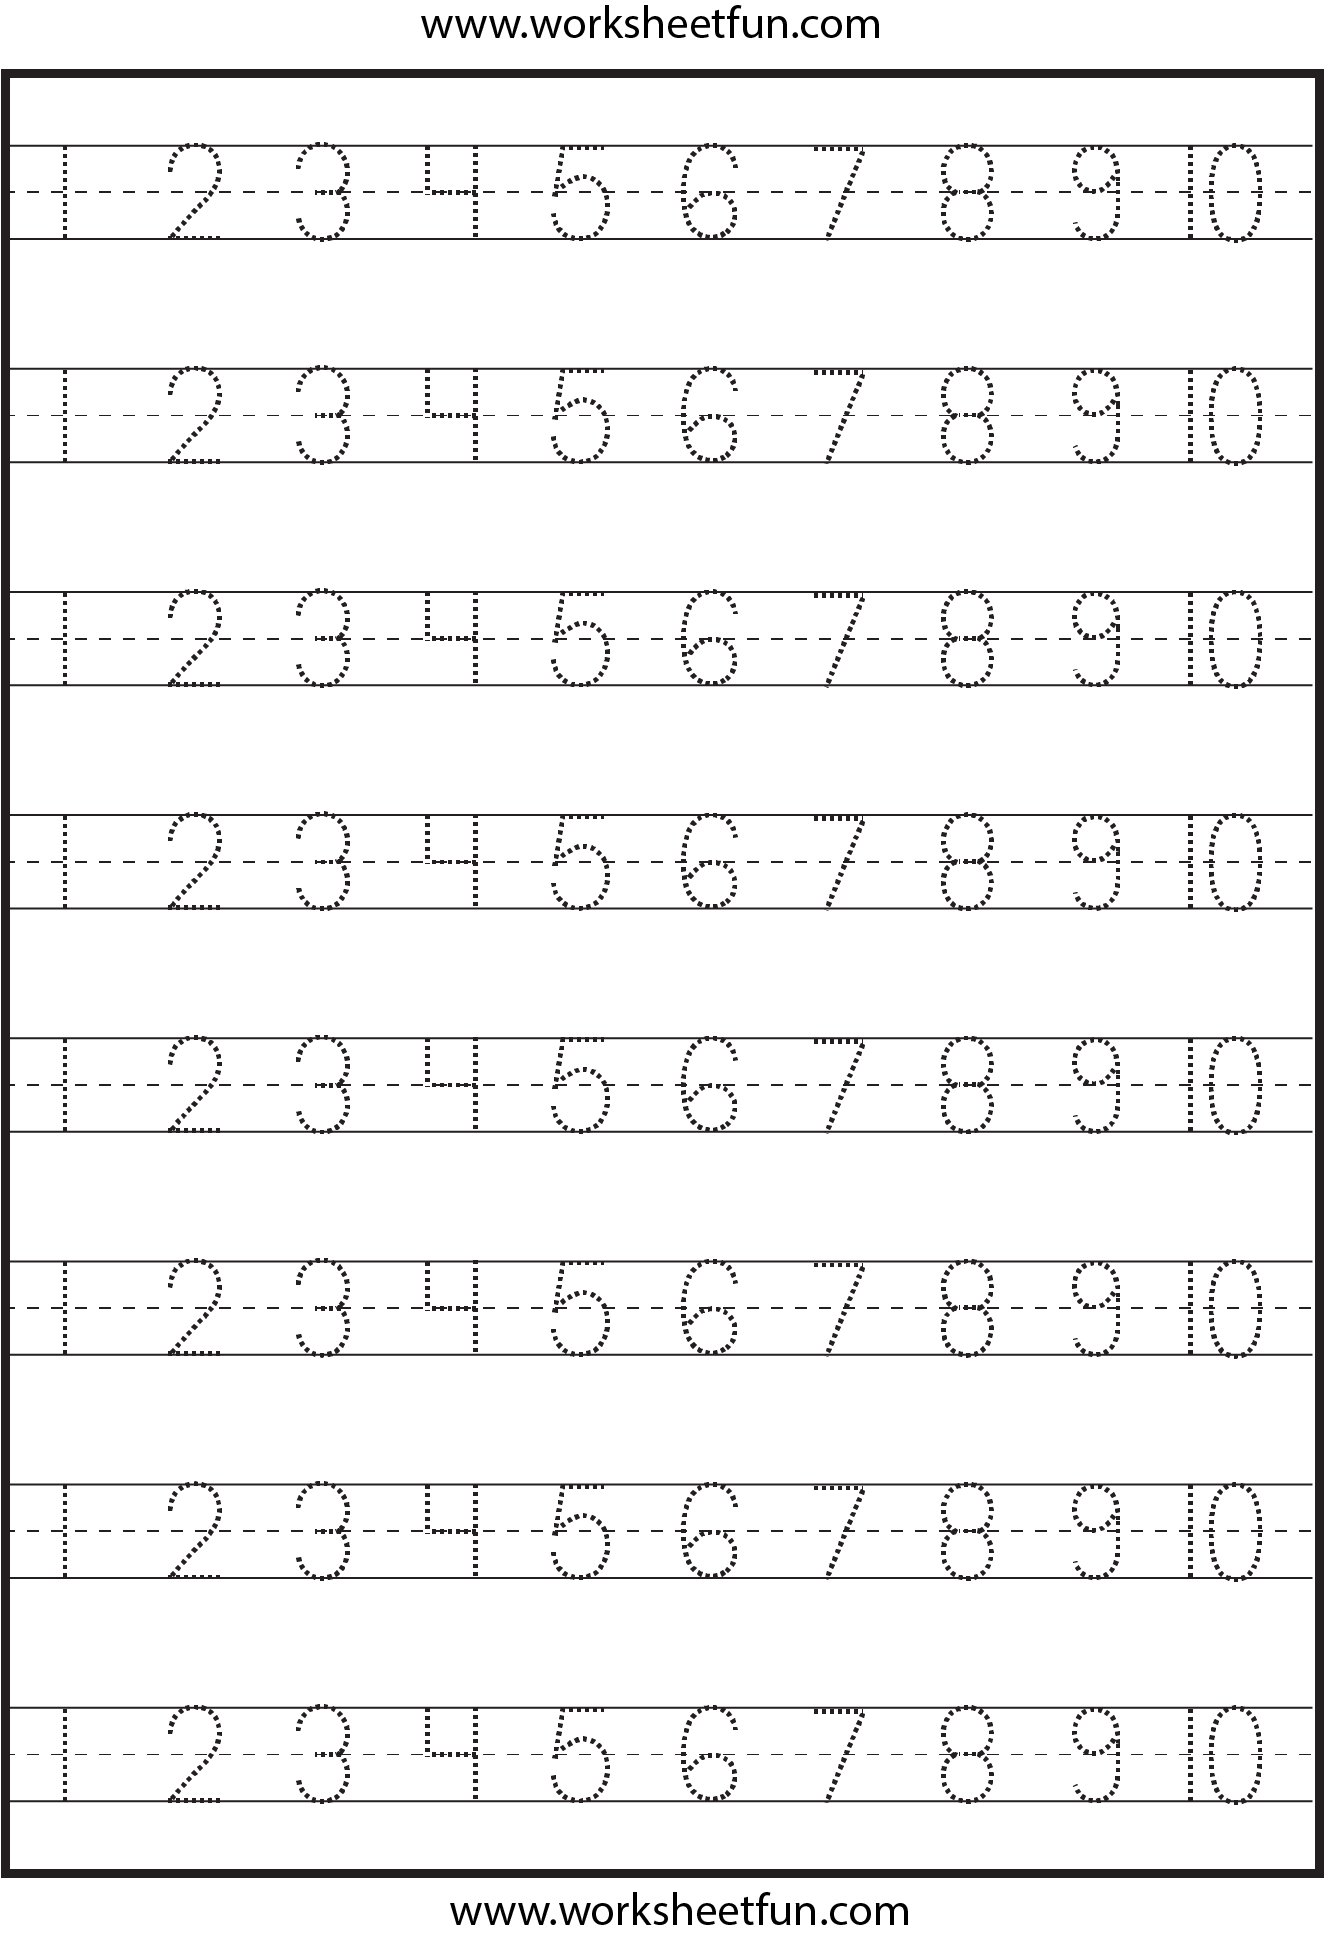 Preschool Worksheet Using Numbers Free Kindergarten Math Worksheet Preschool Worksheets 